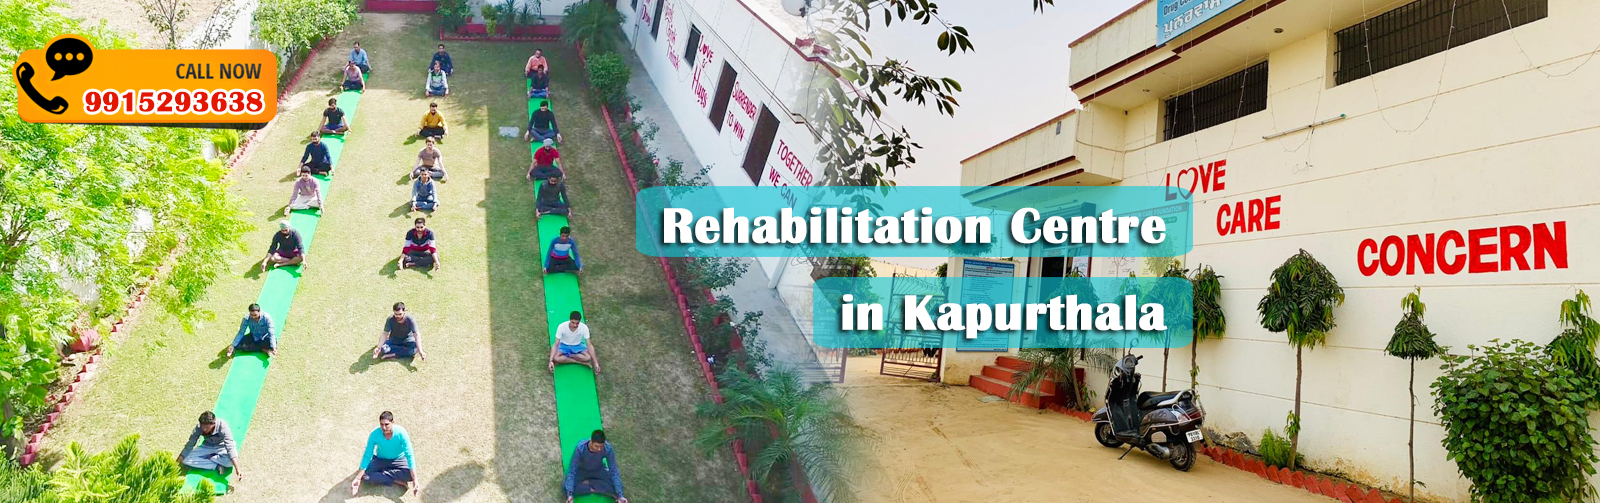 Rehabilitation Centre in Kapurthala